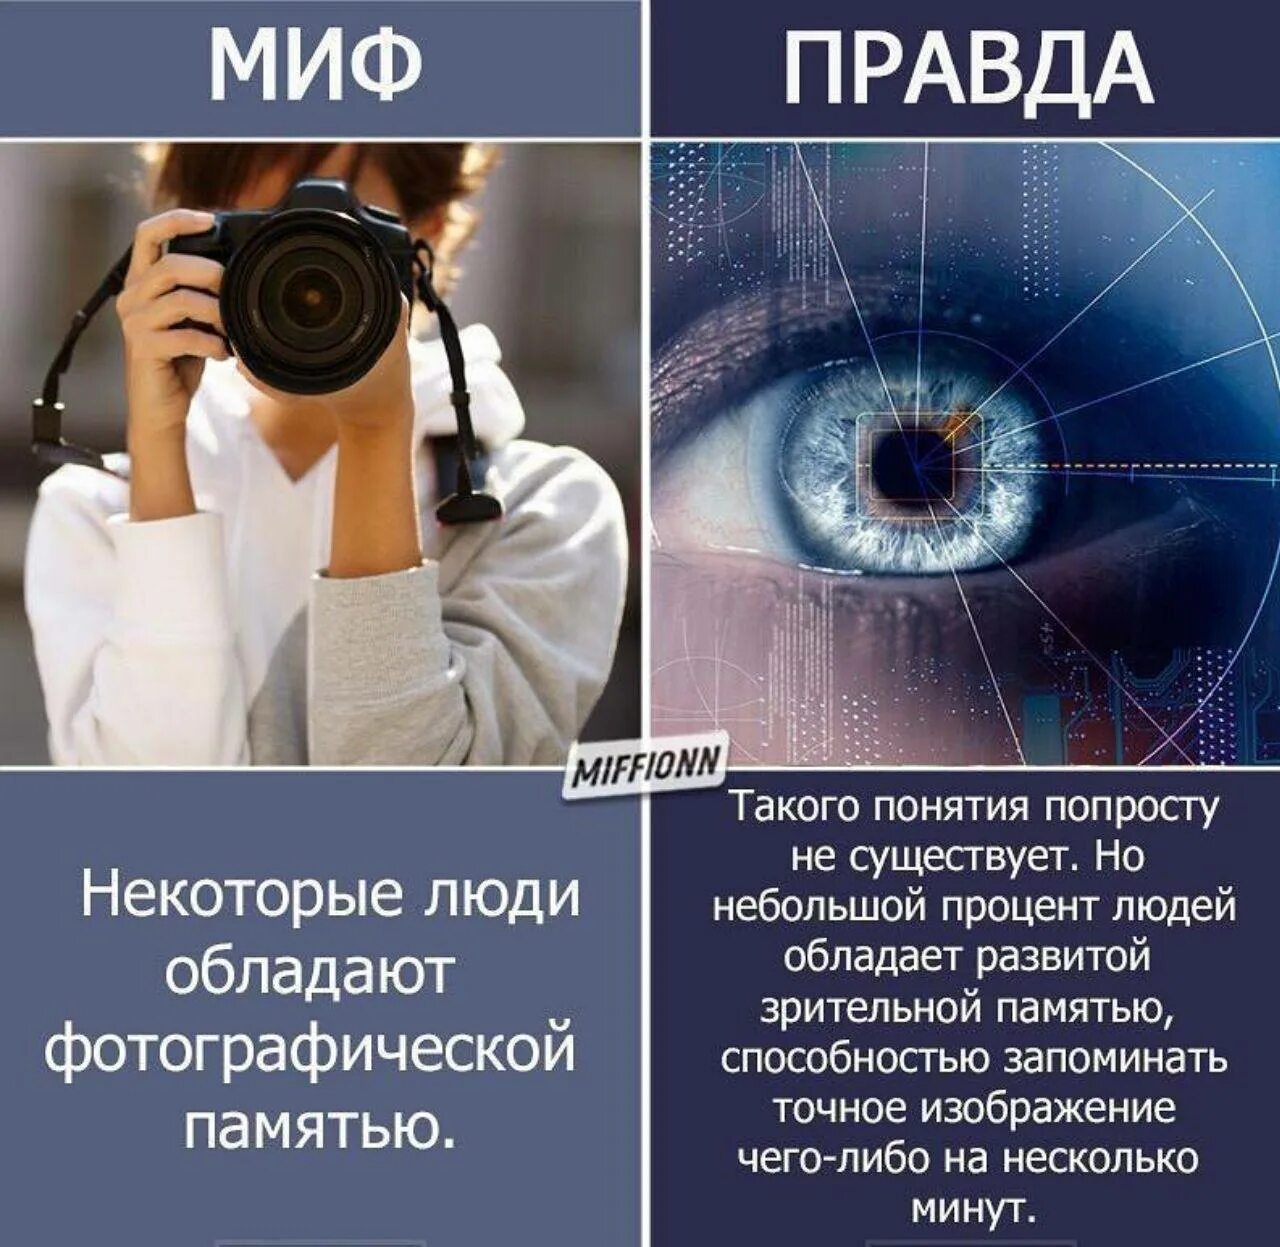 Люди с фотографической памятью. Фотографичная память. Фотографическая память миф. % Людей обладающих фотографической памятью.